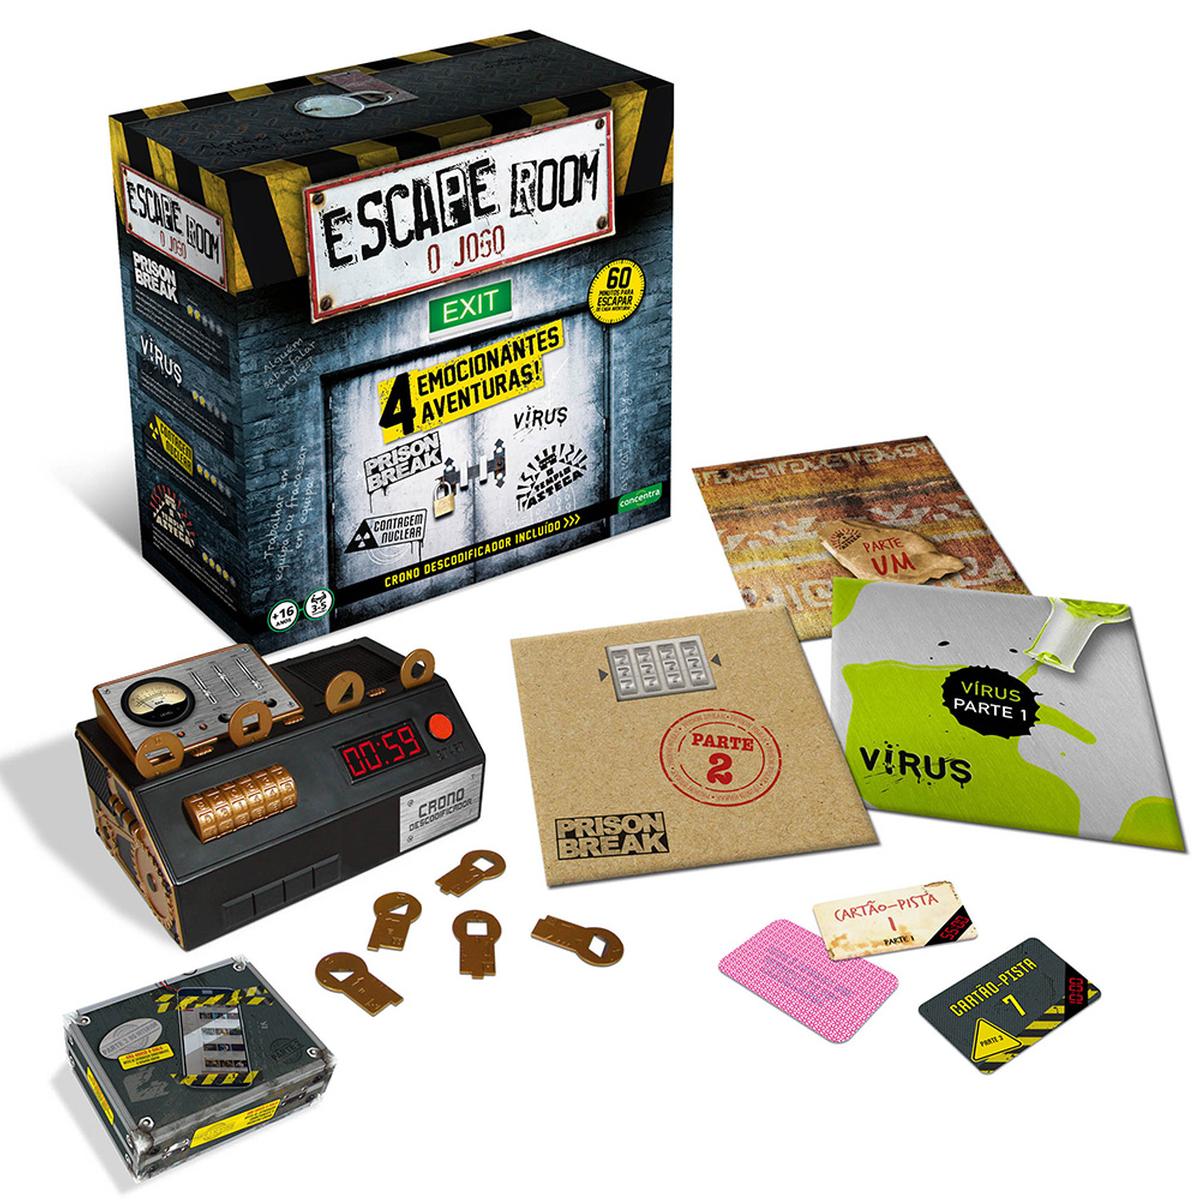 Jogo interativo Missão Escape Room - Multikids - Na caixa original 